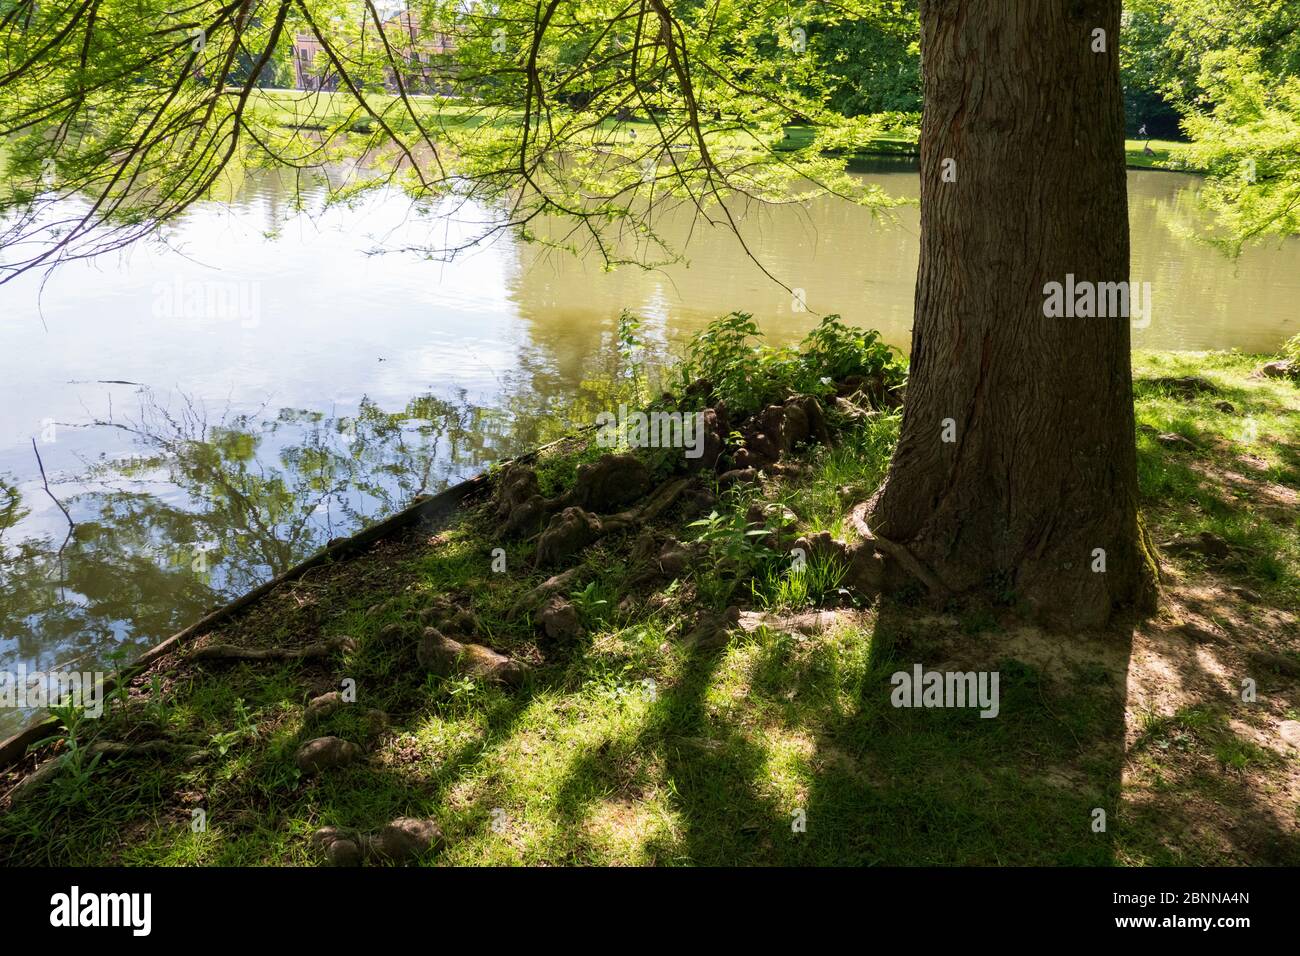 Baumwurzeln wachsen in einem kleinen See nach oben, Elfen und Droll Zuhause Stock Photo